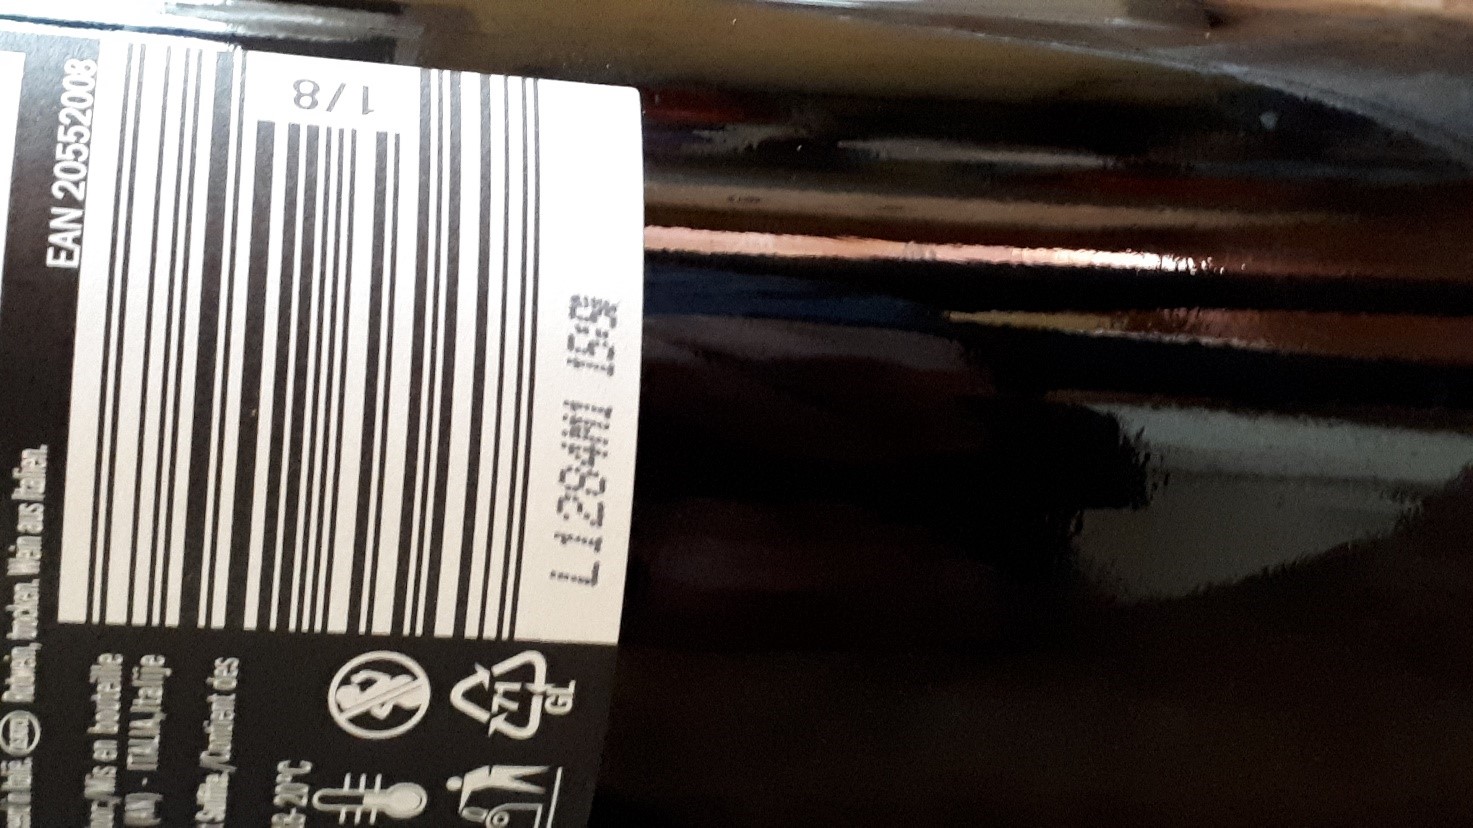 lotto di produzione su etichette per vino